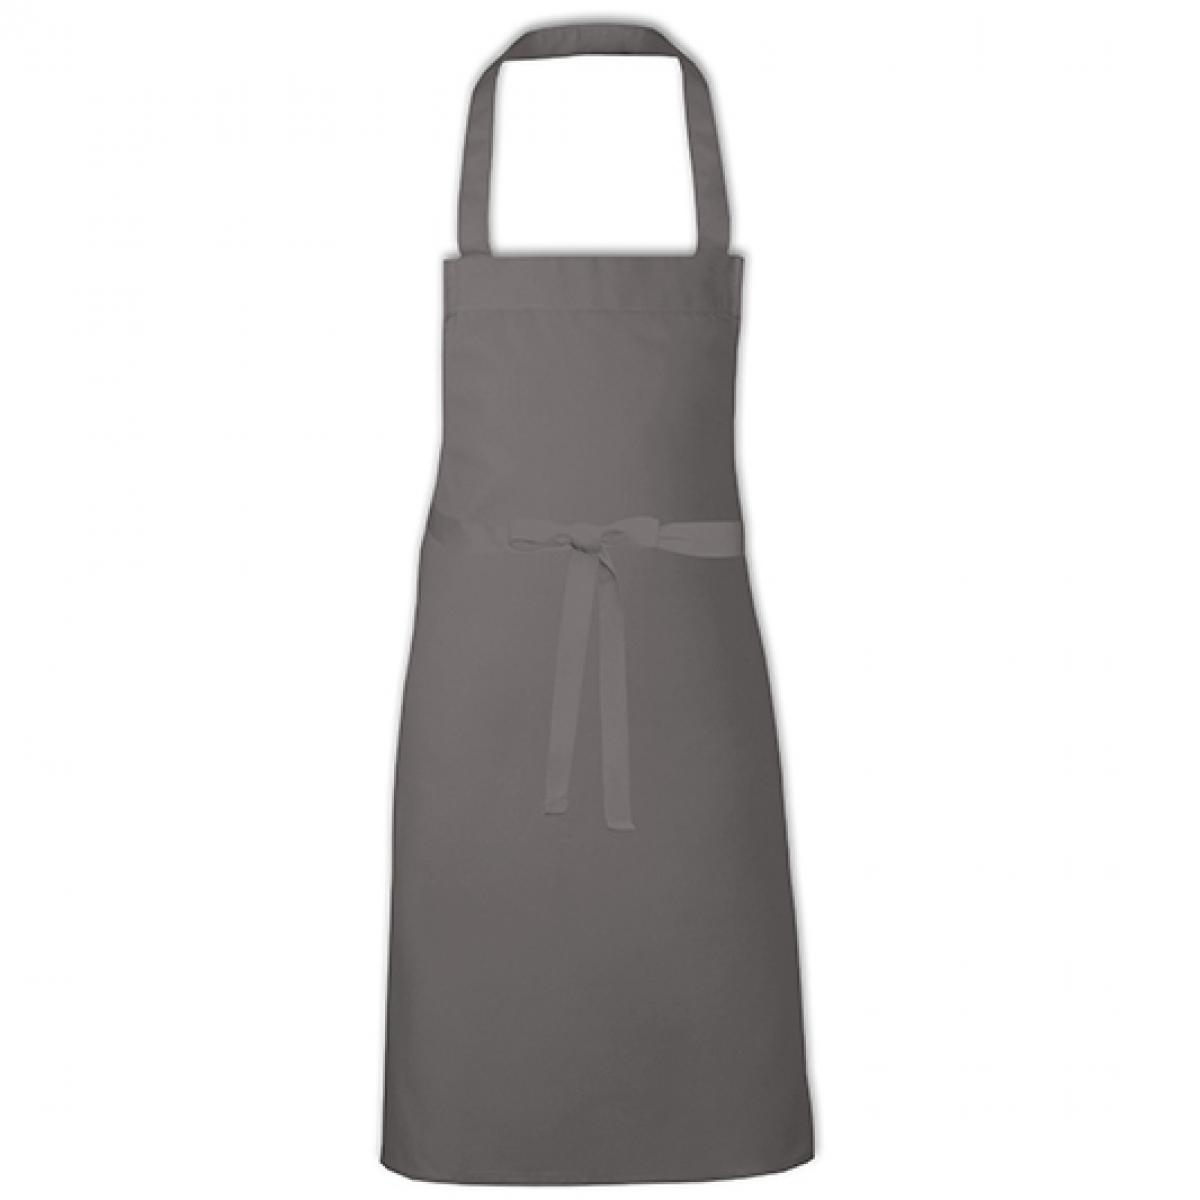 Hersteller: Link Kitchen Wear Herstellernummer: BBQ8073 Artikelbezeichnung: Barbecue Apron - 73 x 80 cm - Waschbar bis 60 °C Farbe: Dark Grey (ca. Pantone 431)